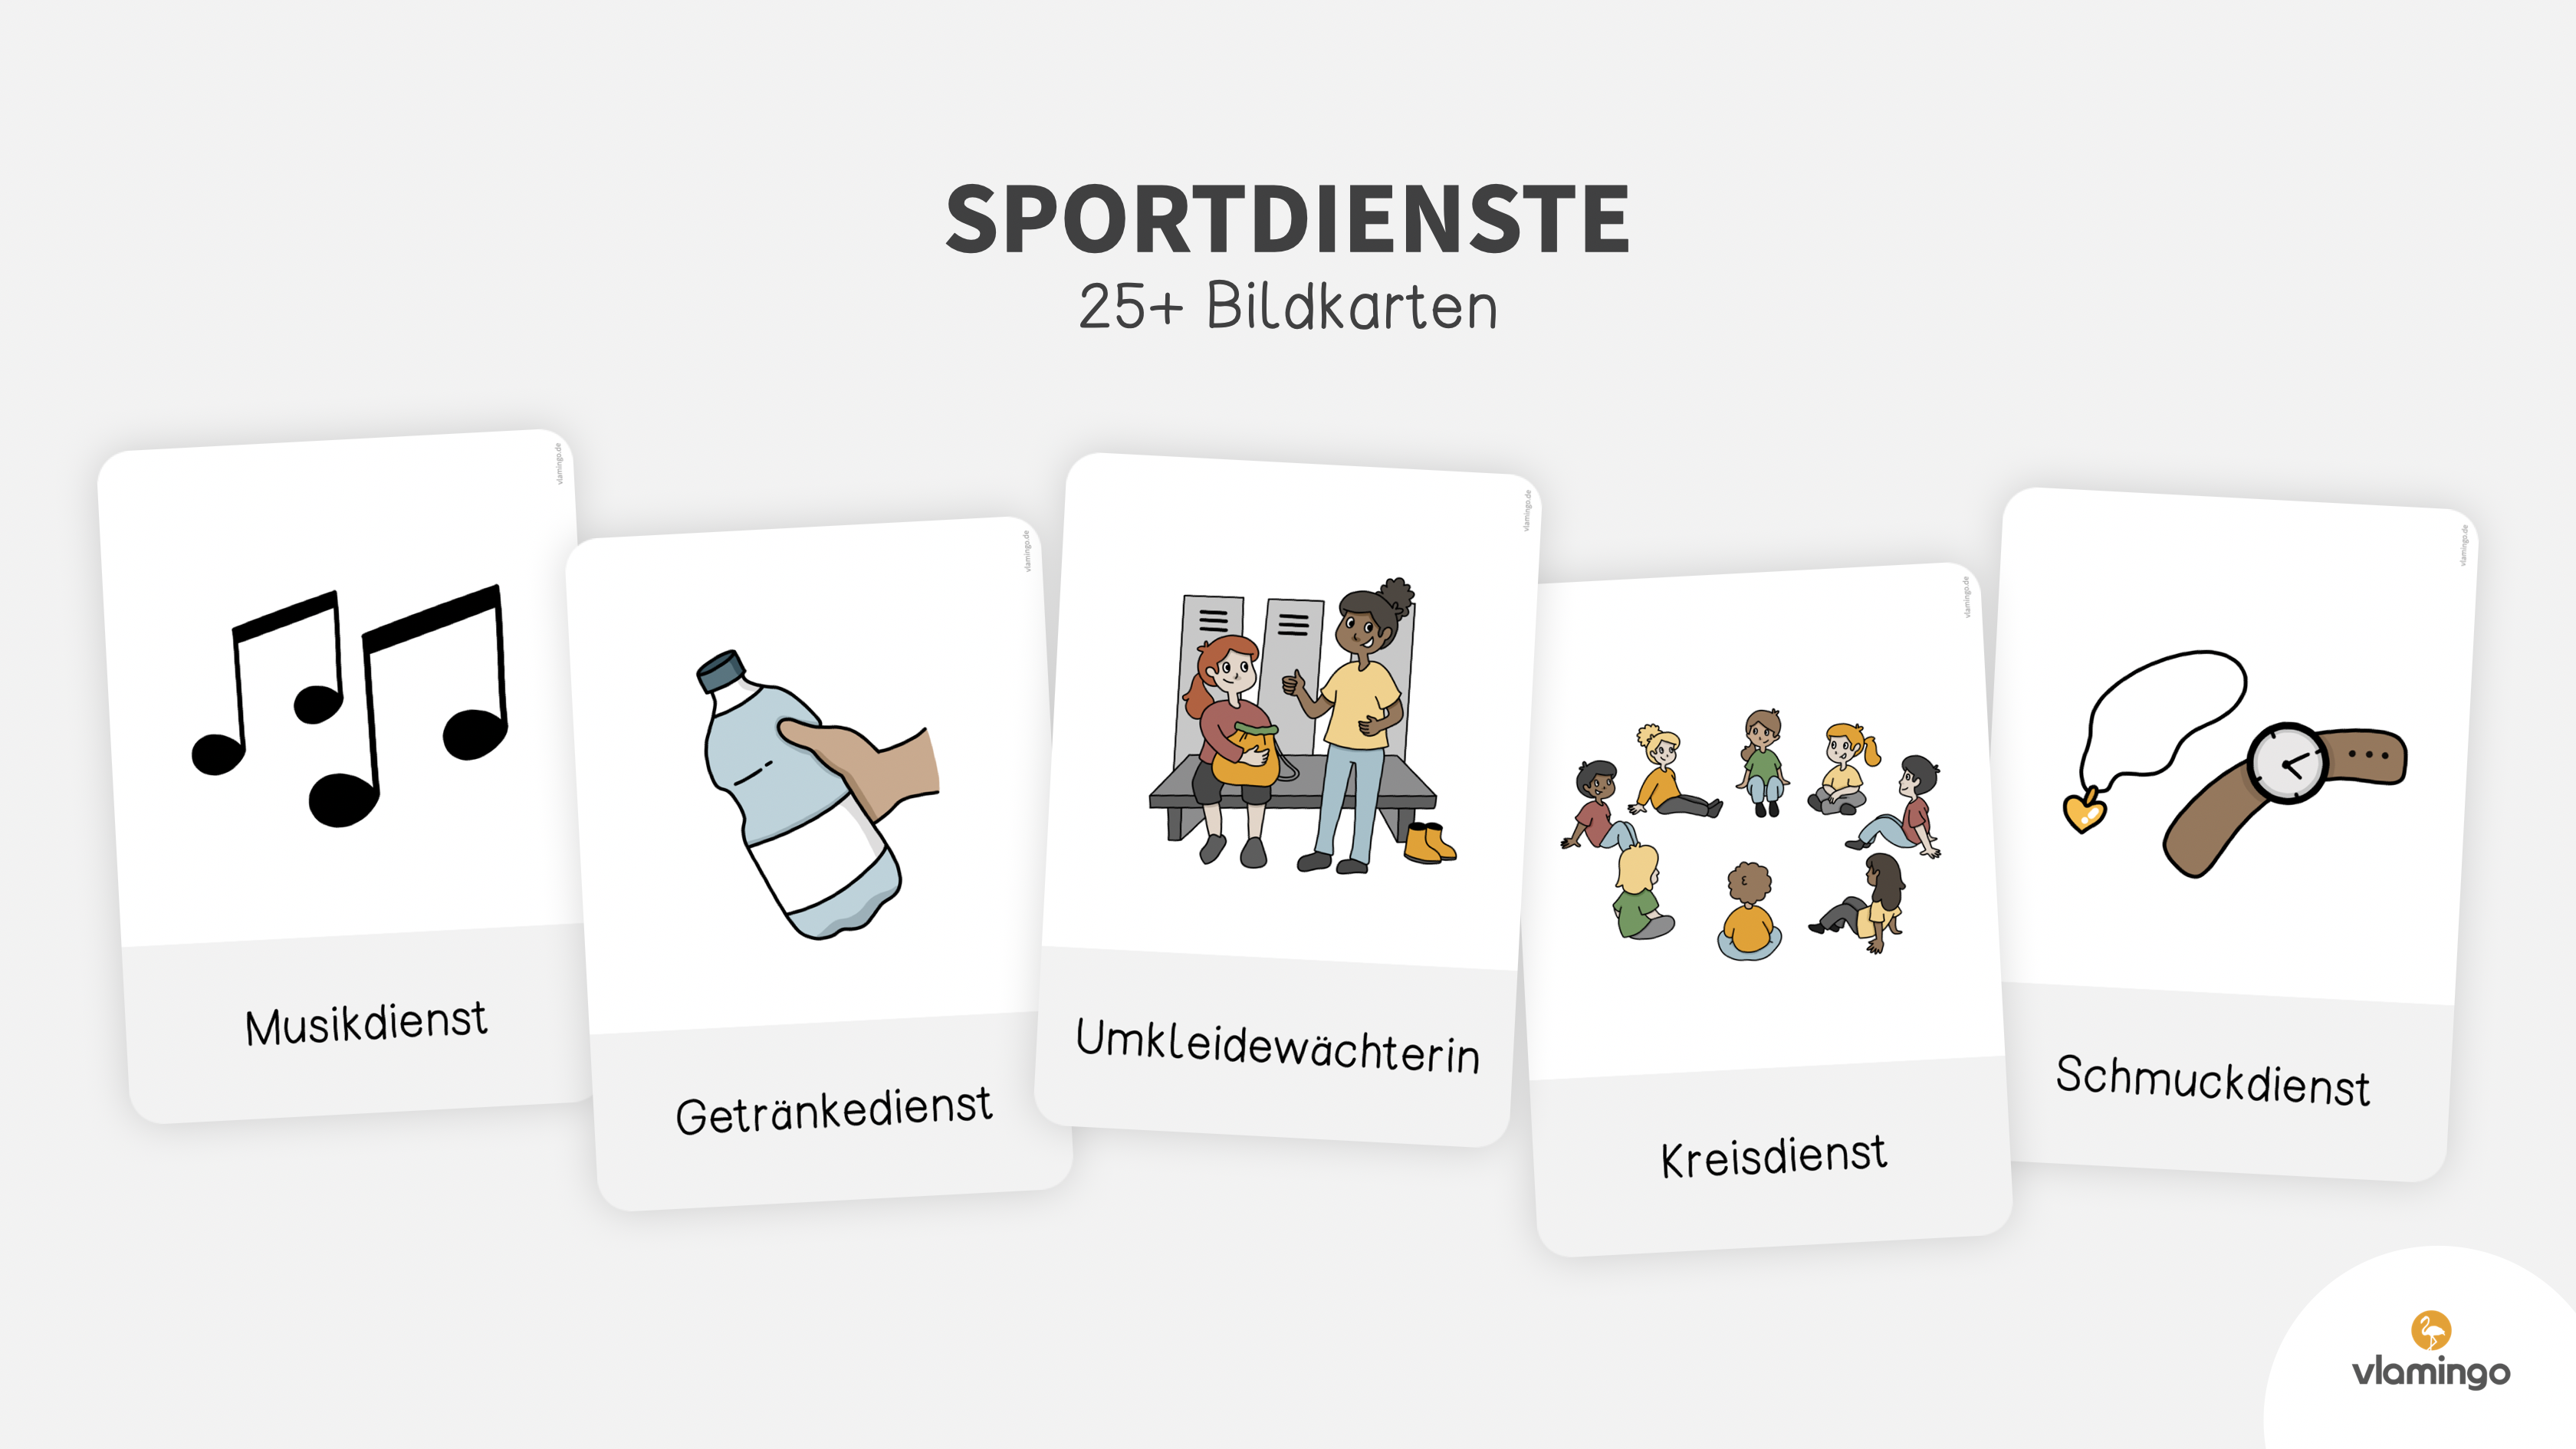 Sportdienste - 25 Bildkarten für den Sportunterricht in der Grundschule